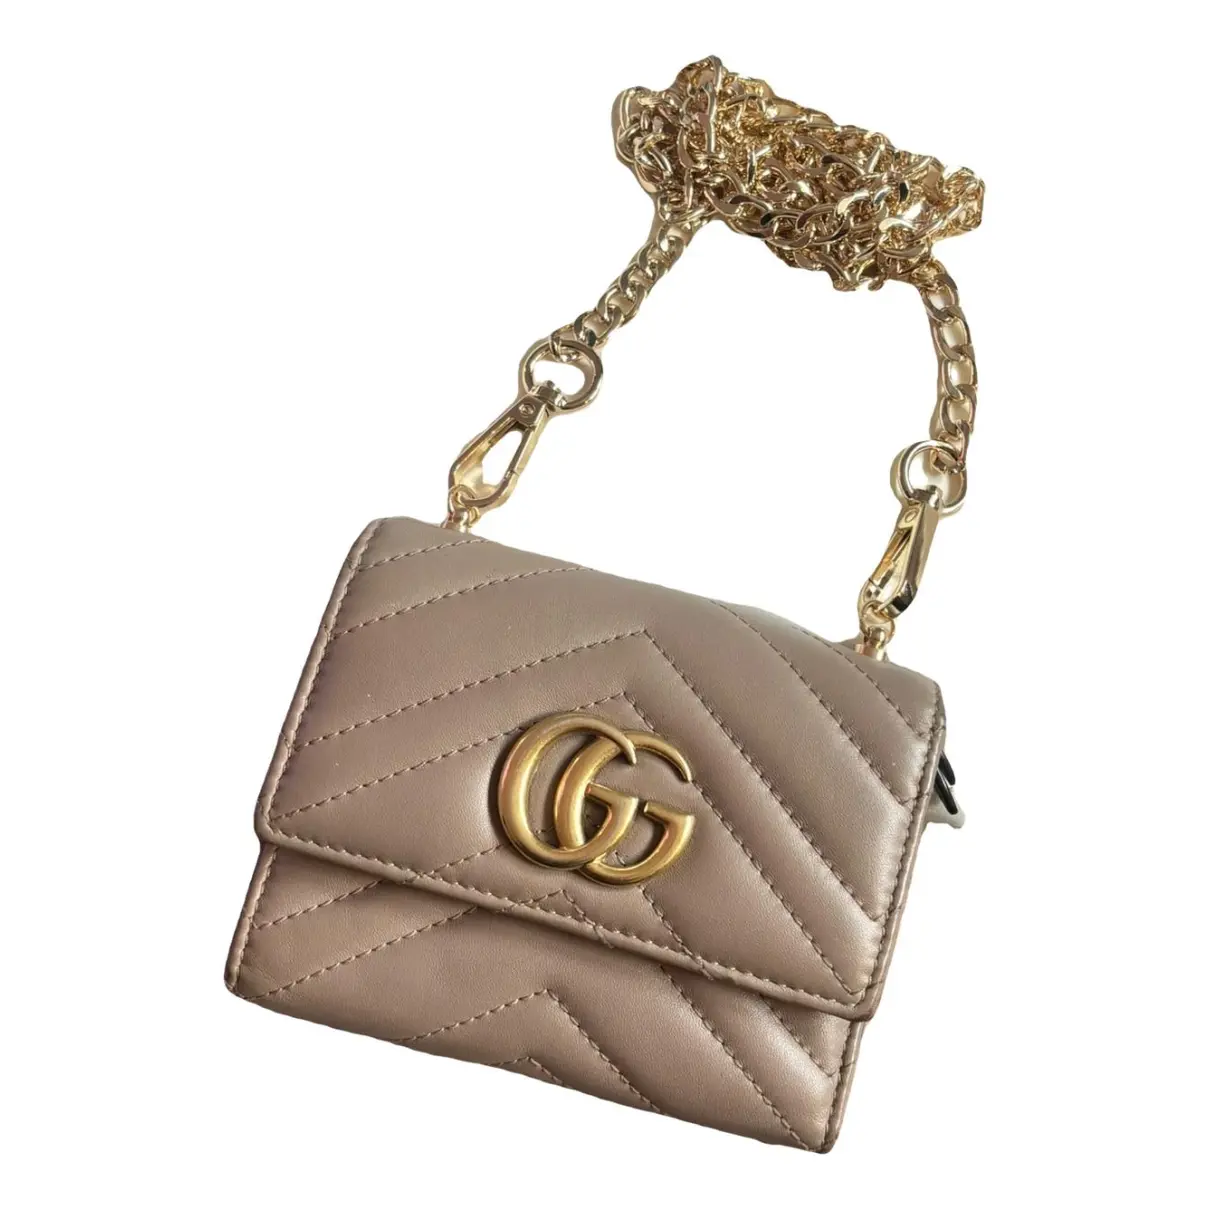 GG Marmont leather handbag